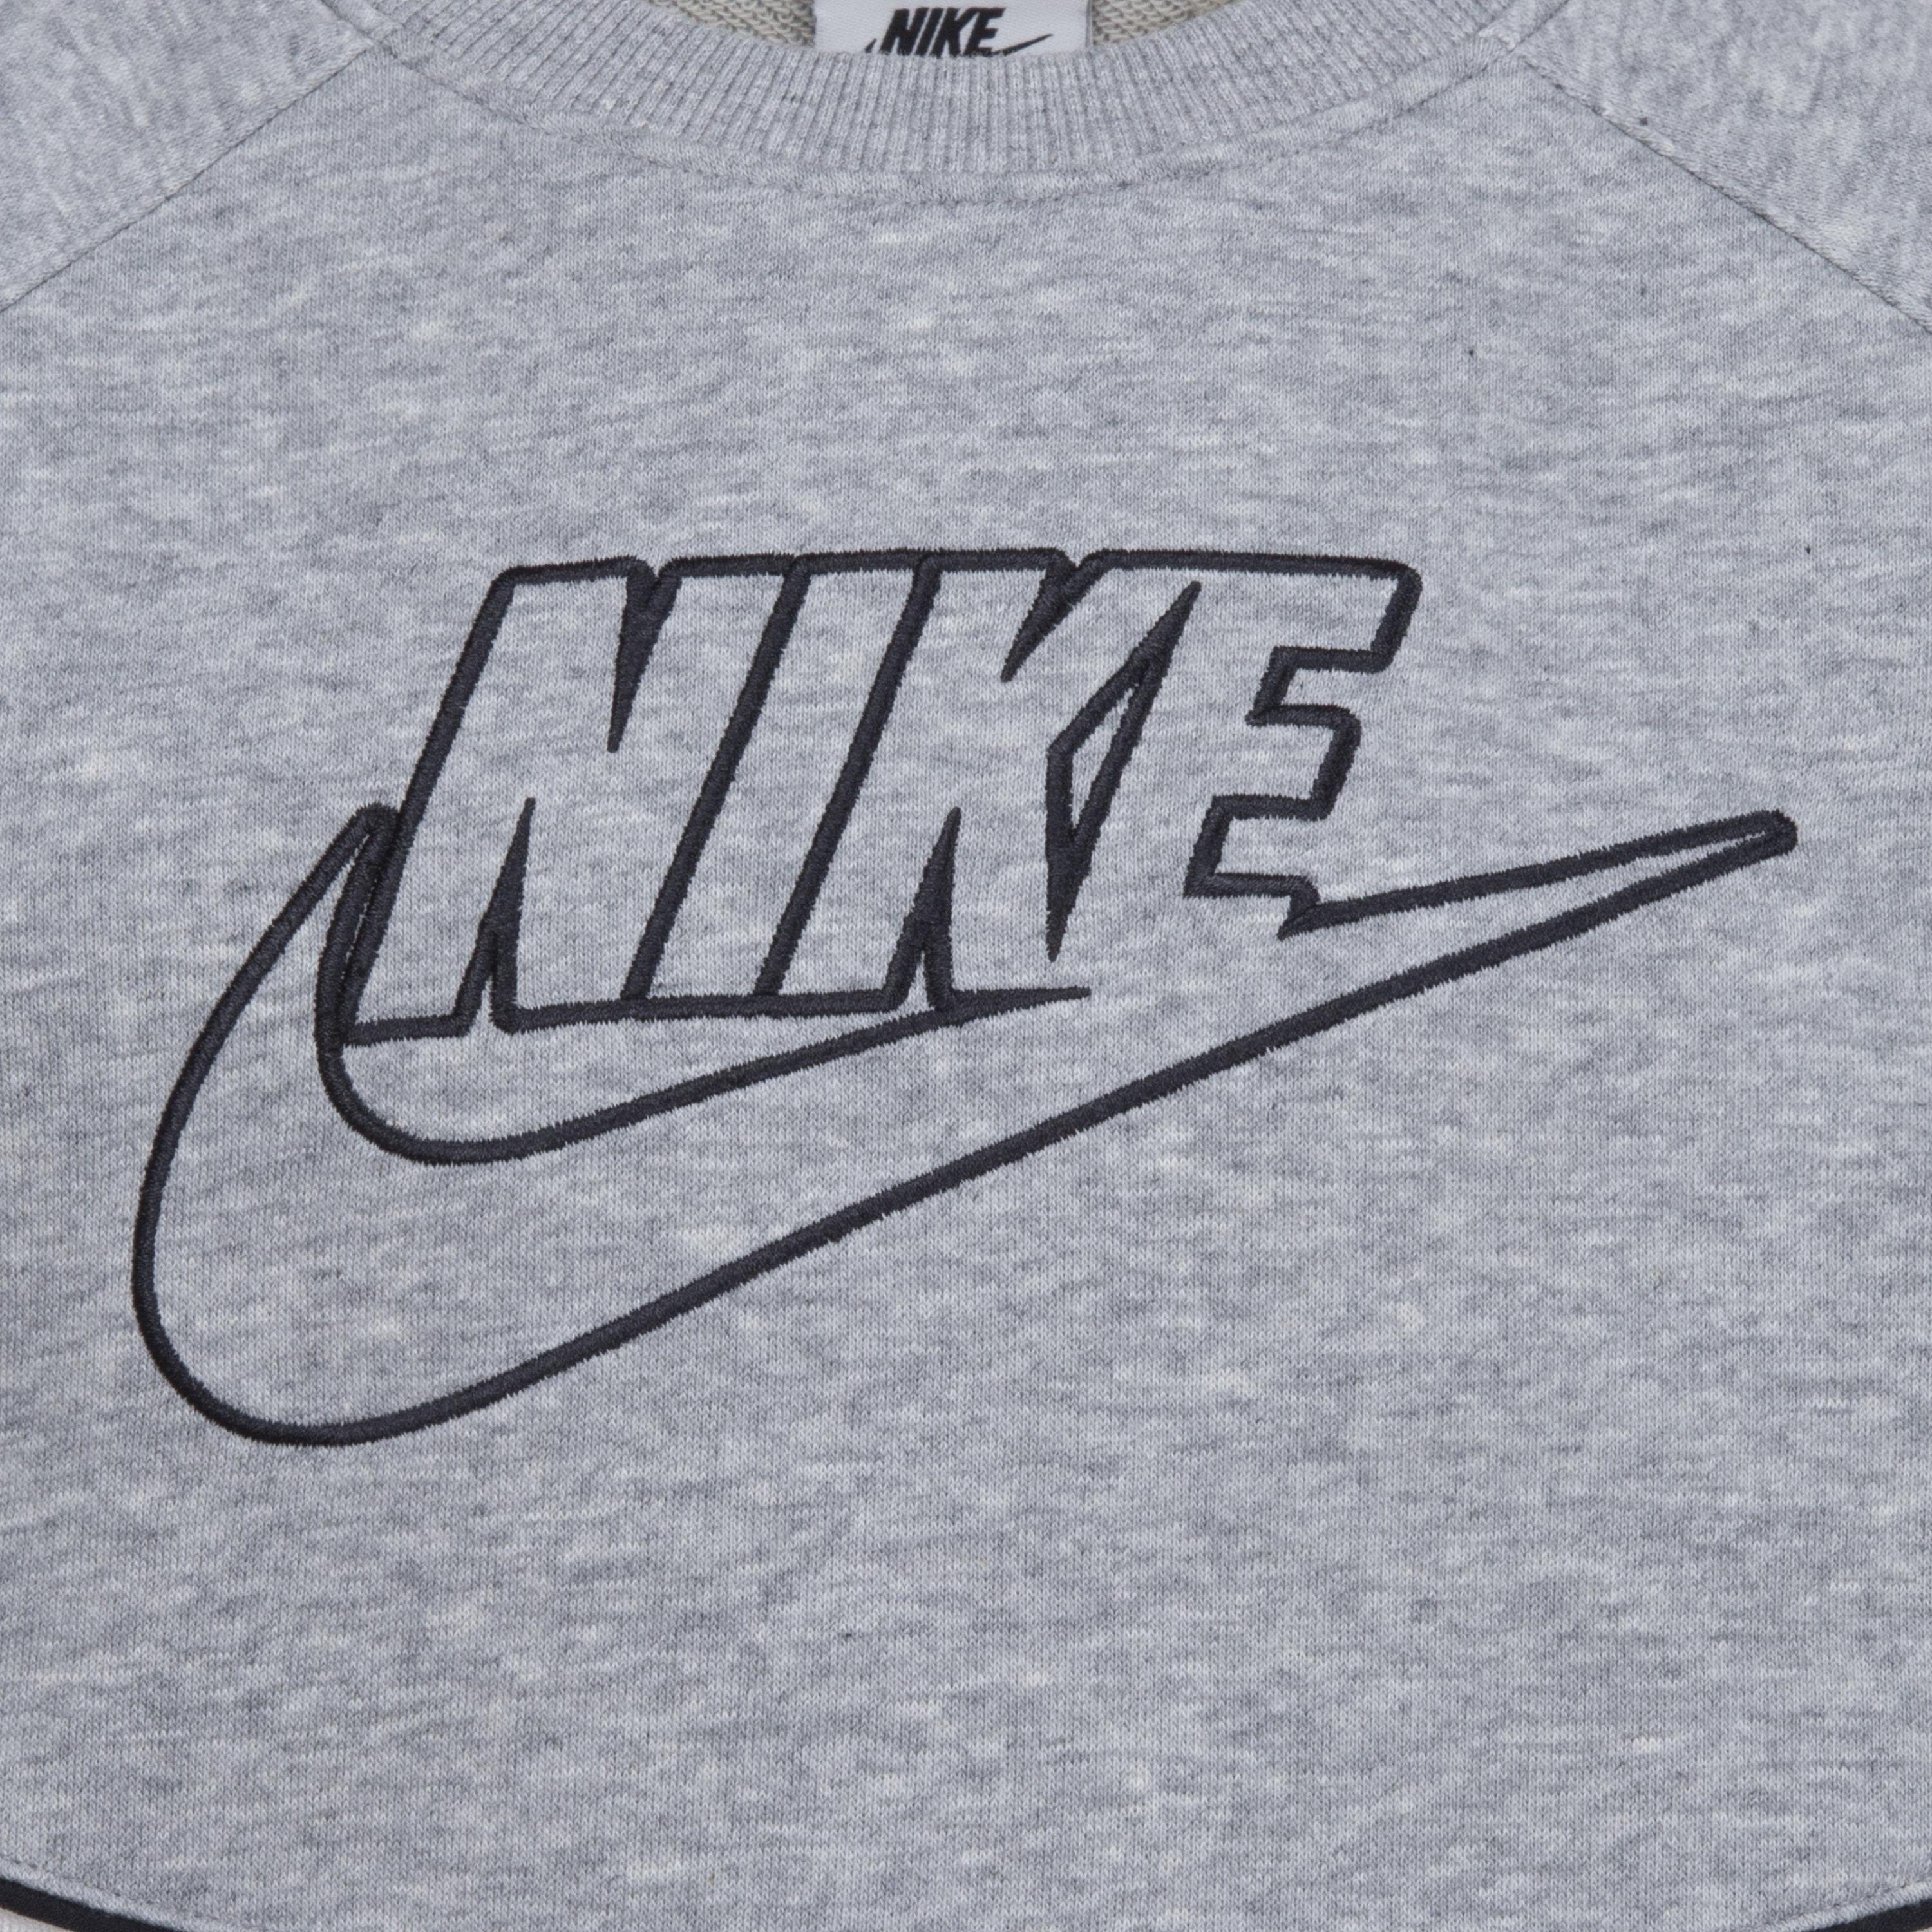 2-tlg) Jogginganzug Sportswear grey Nike (Set,